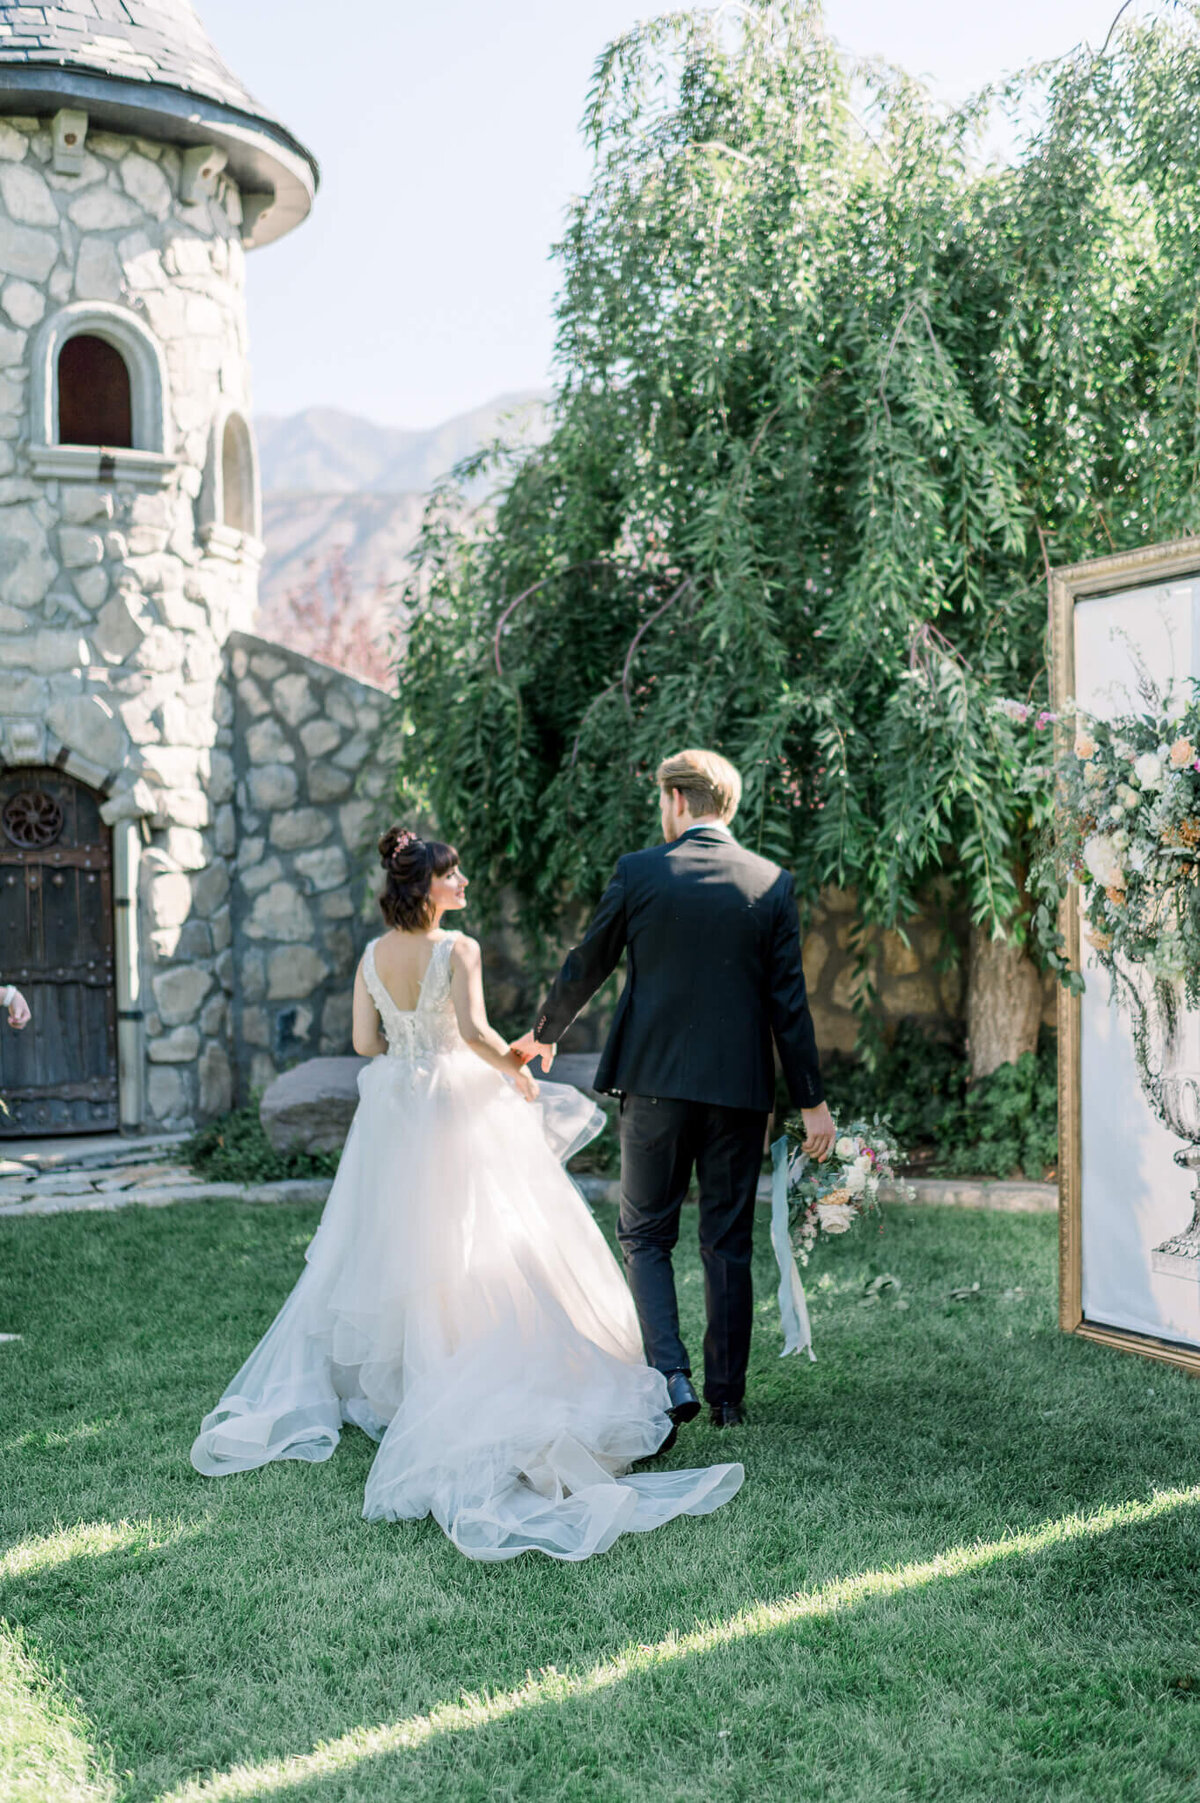 couple walks towards large castle wearing white dress and black tuxedo, groom holds wedding bouquet, arkansas wedding photographer